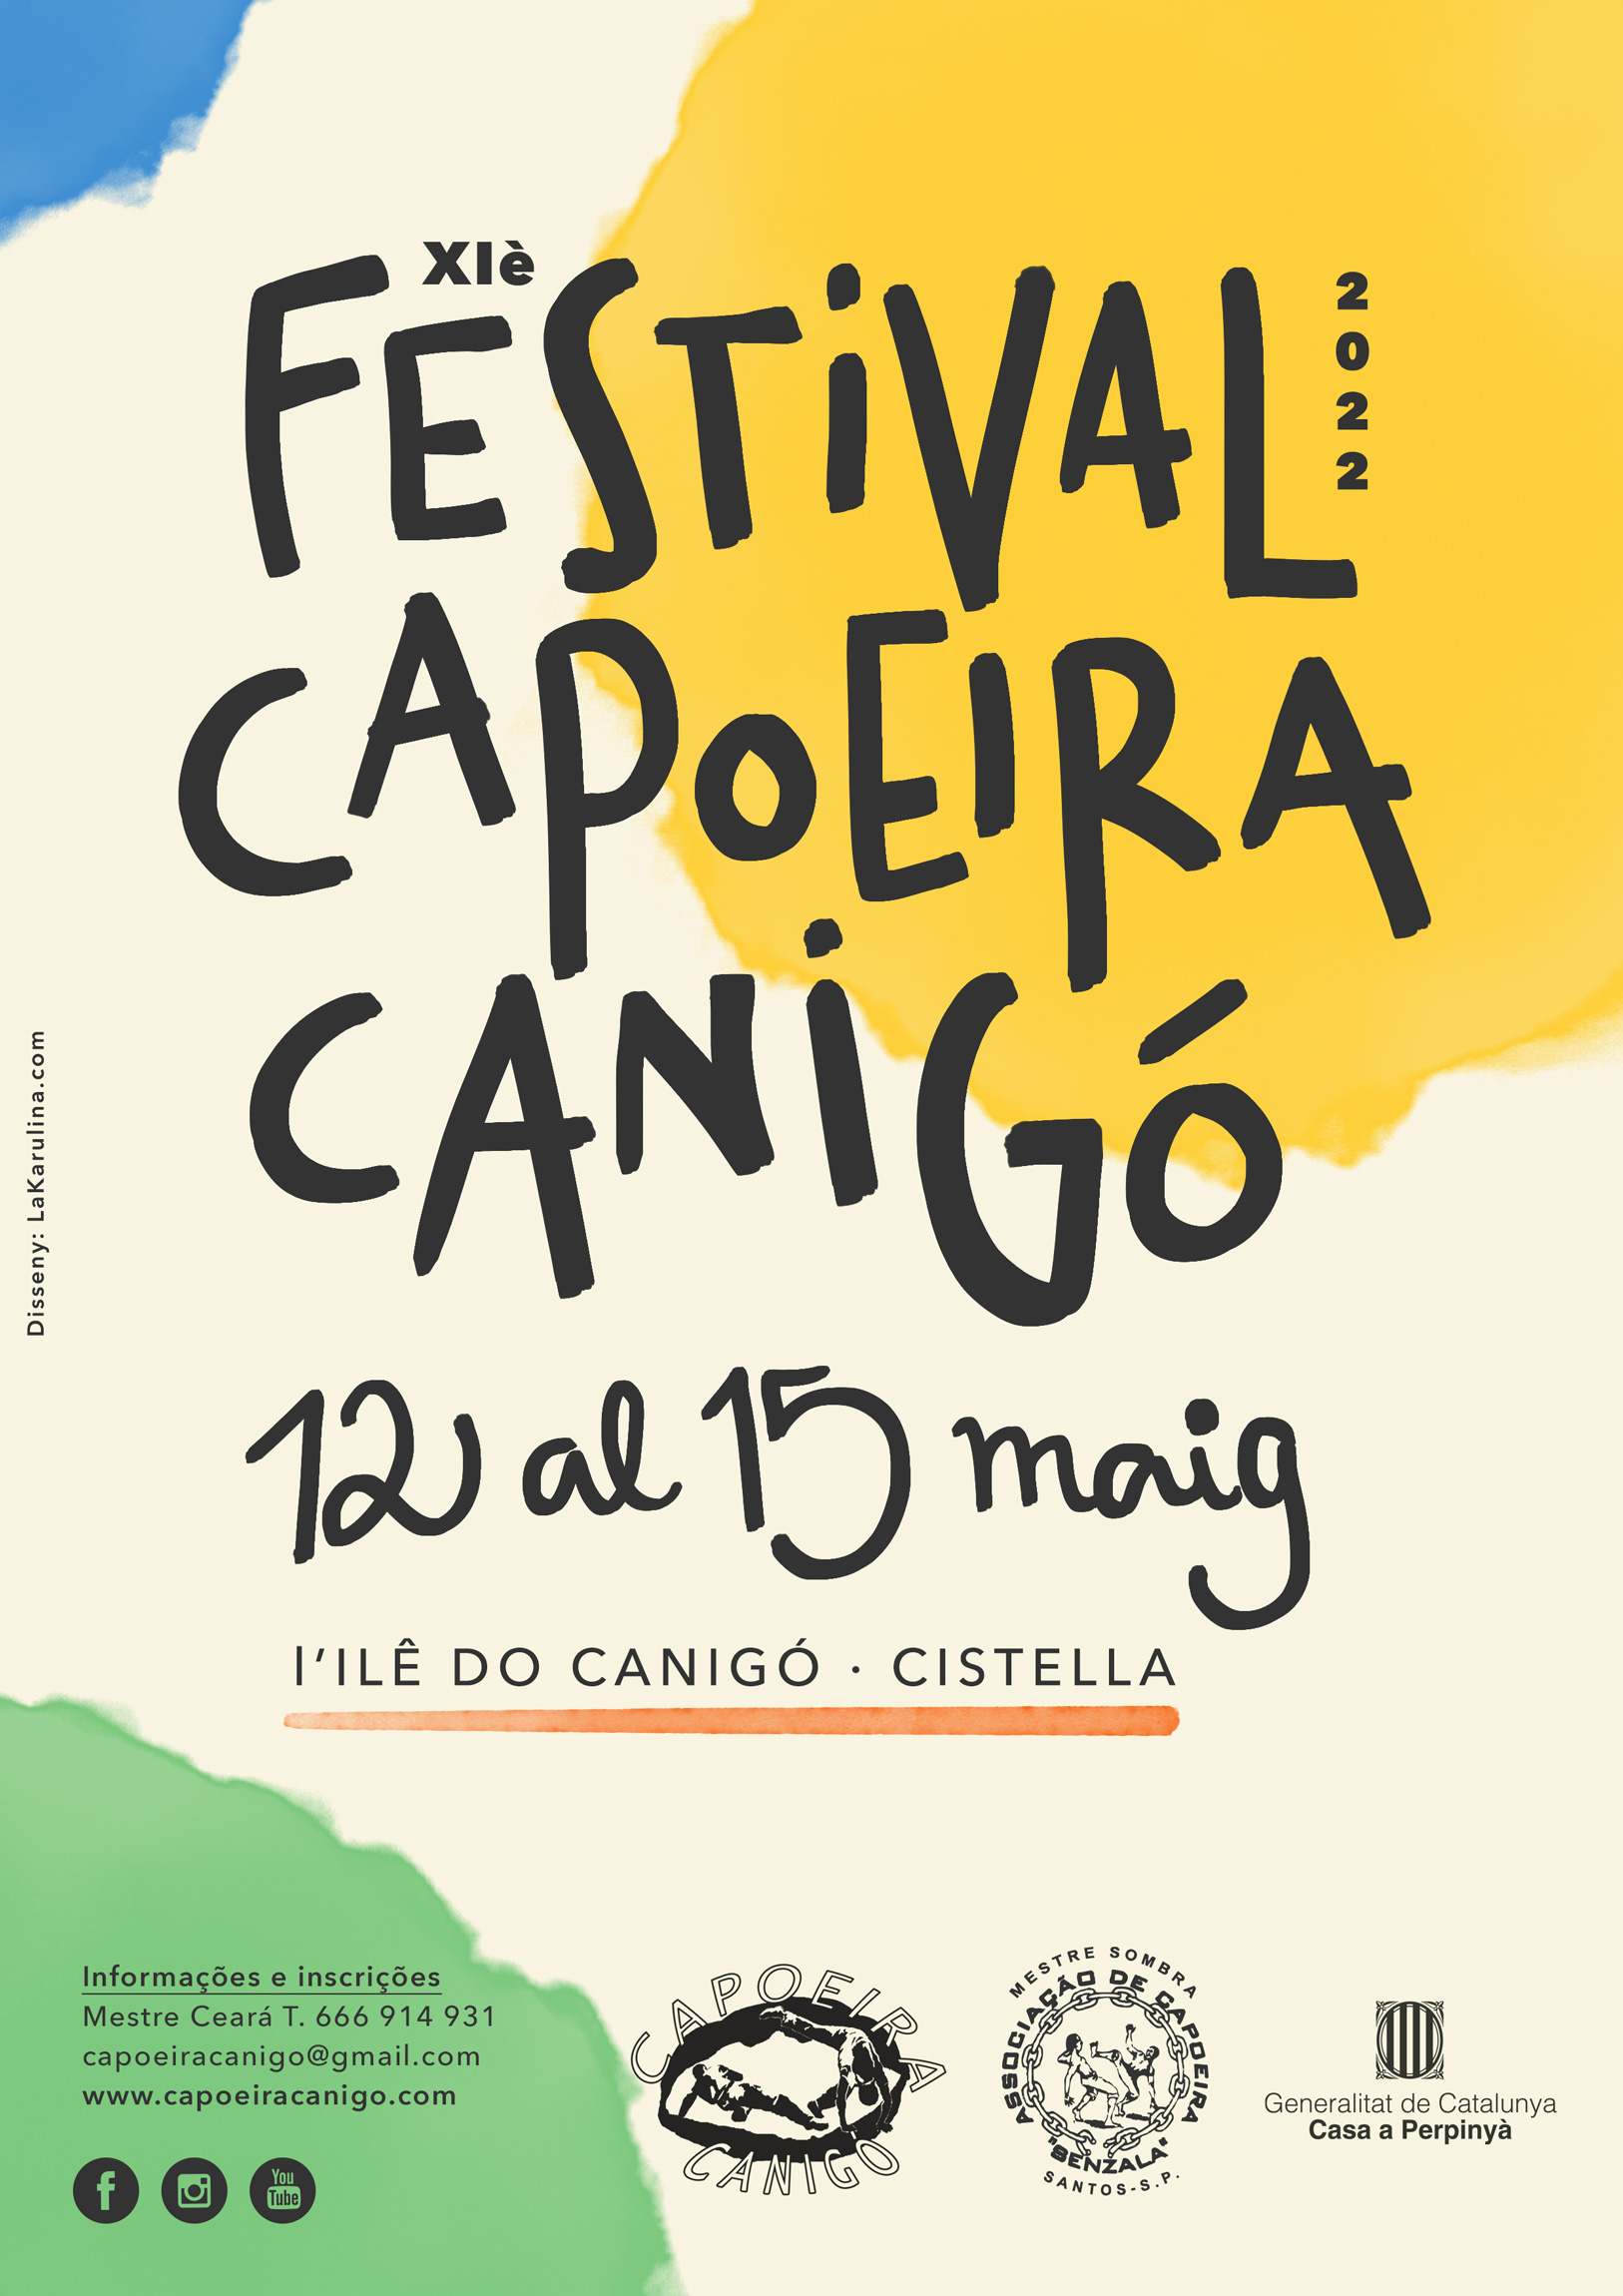 Festival Capoeira Canigó 2022 Mestre Ceará Girona